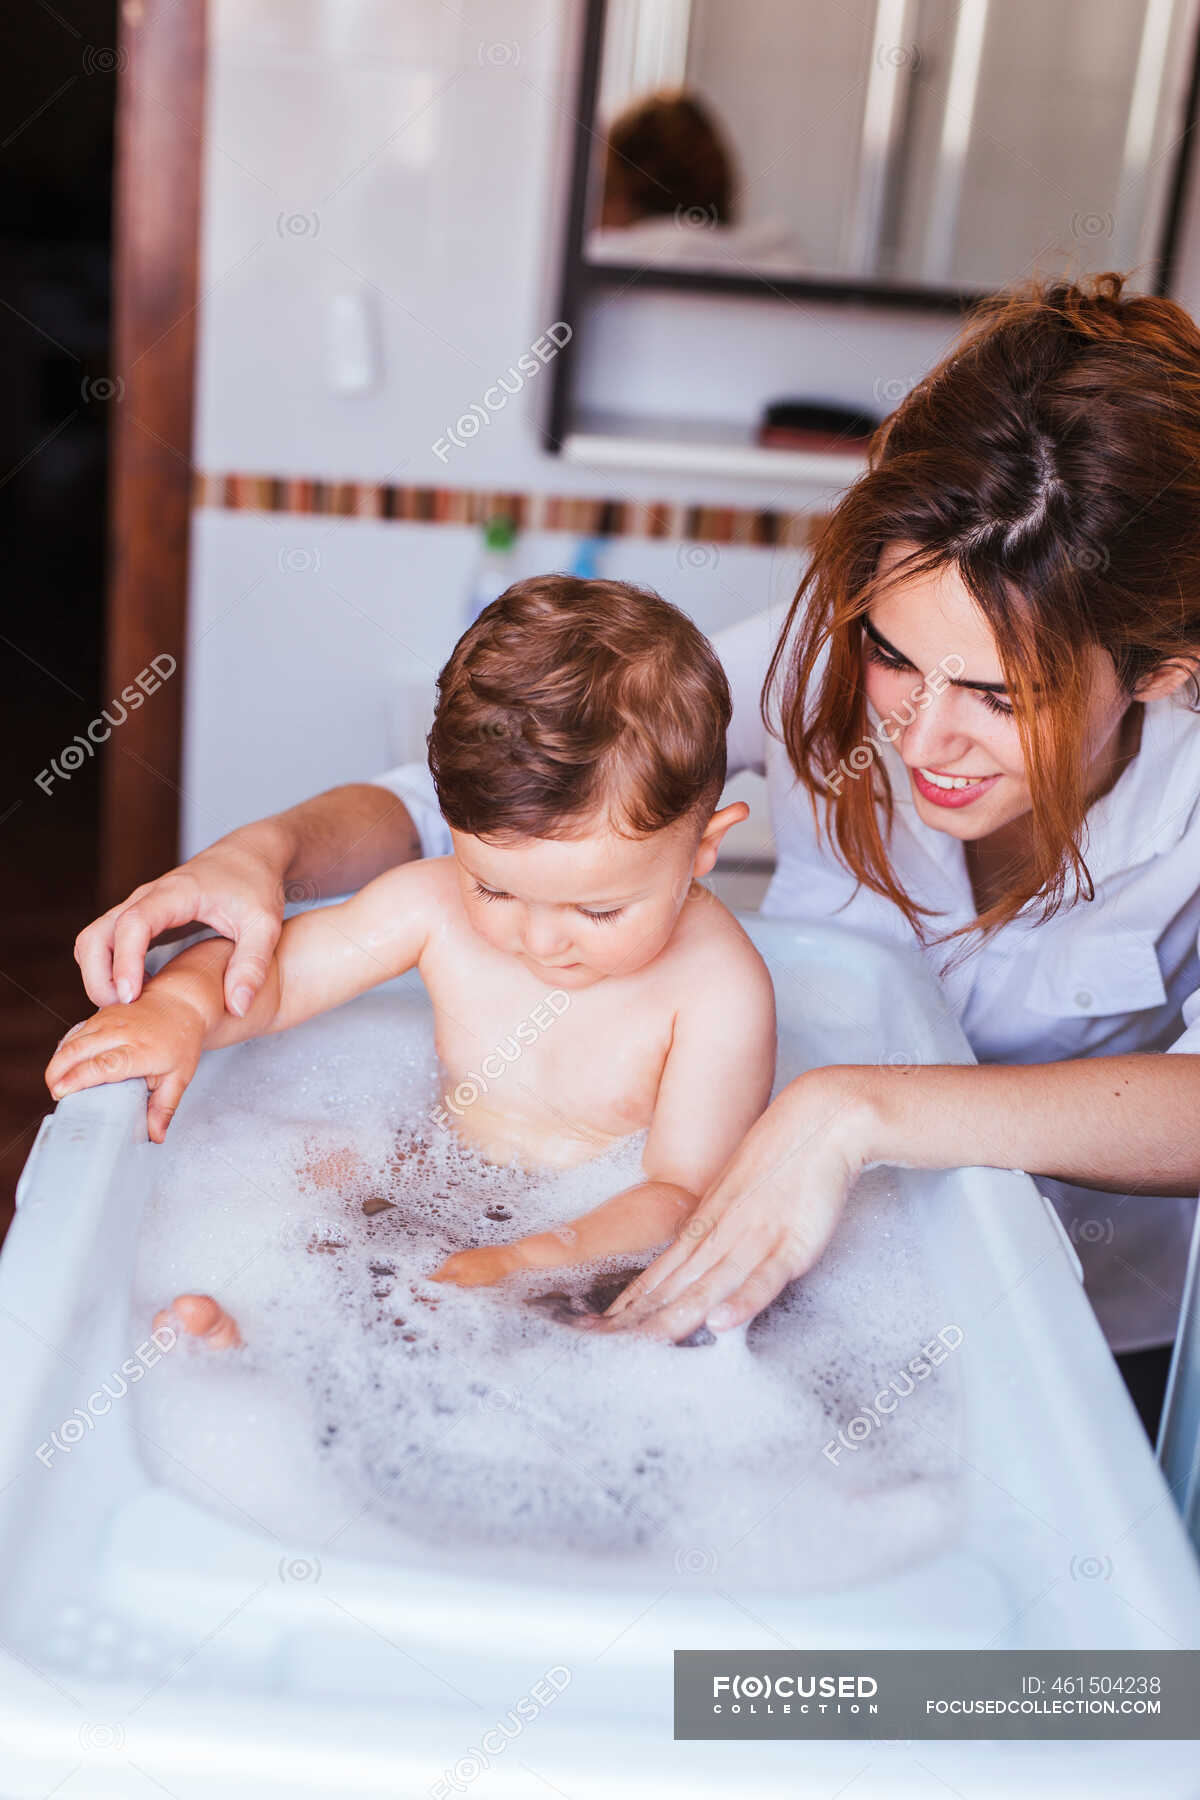 Моет сына в душе. Купание мамы с малышом в ванной. Дети в ванной с родителями. Мама купает сына. Купаю сына.